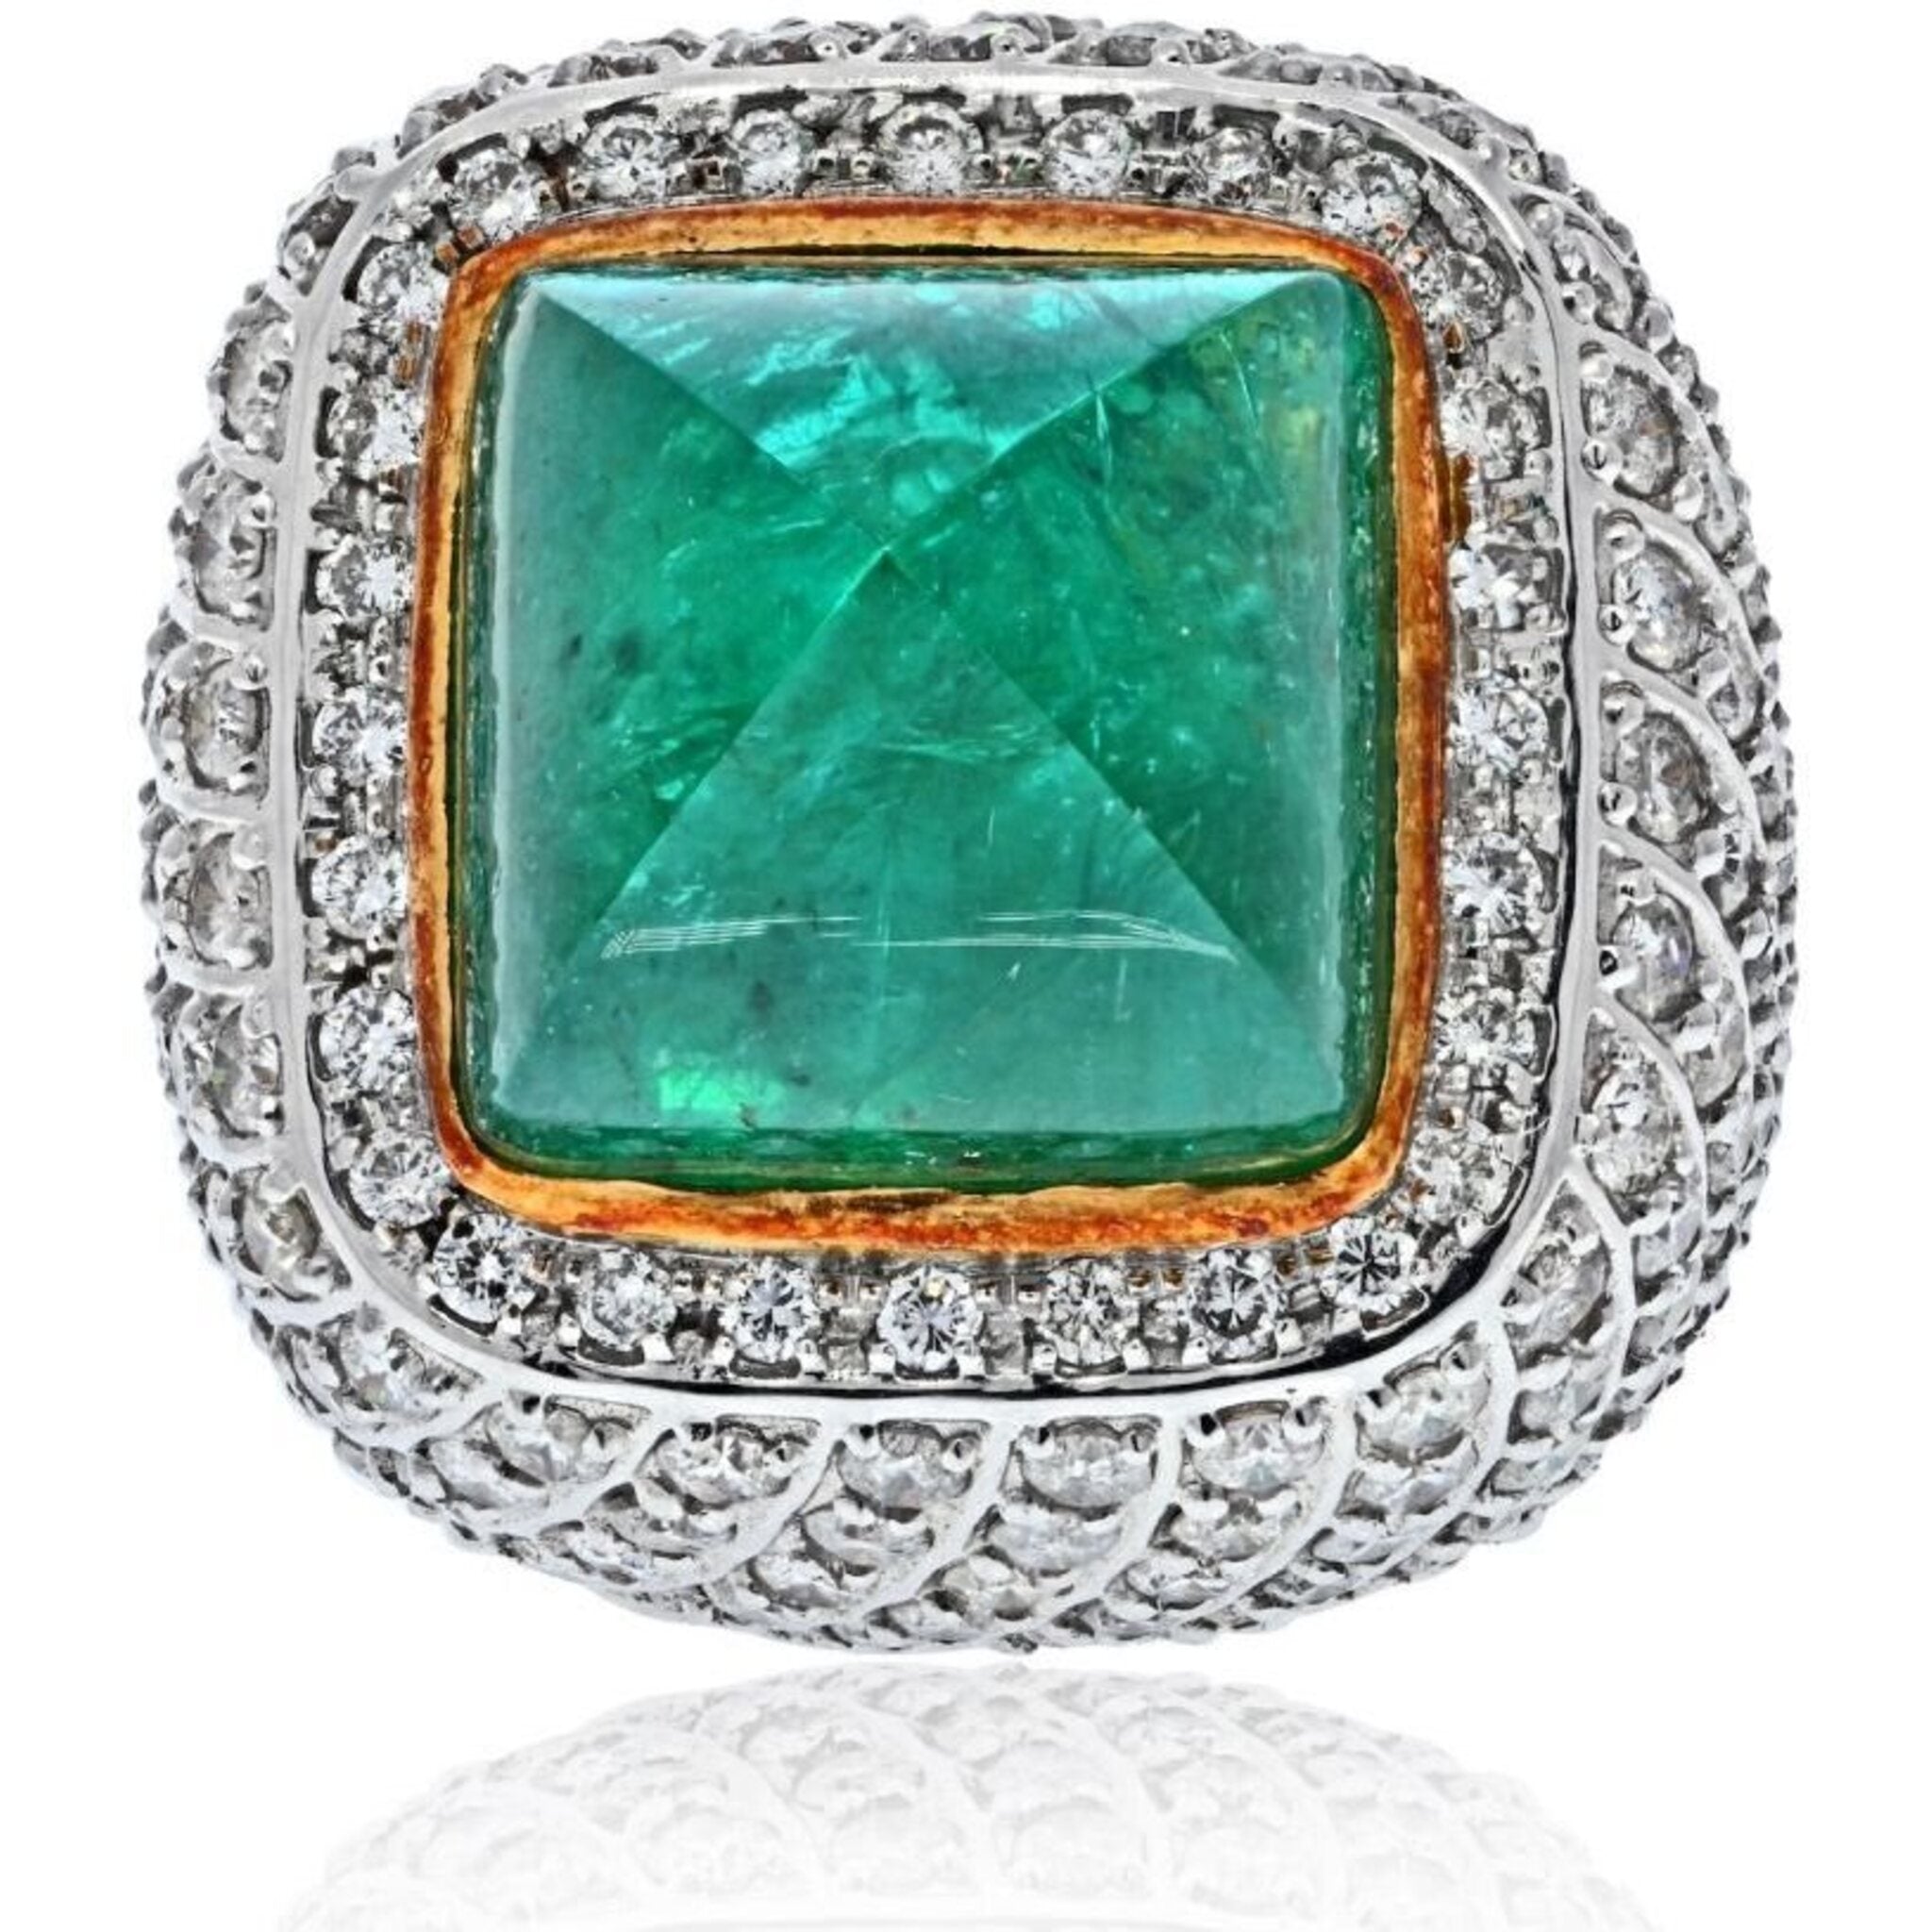 Buy Shimmering Splendor Green Cocktail Ring